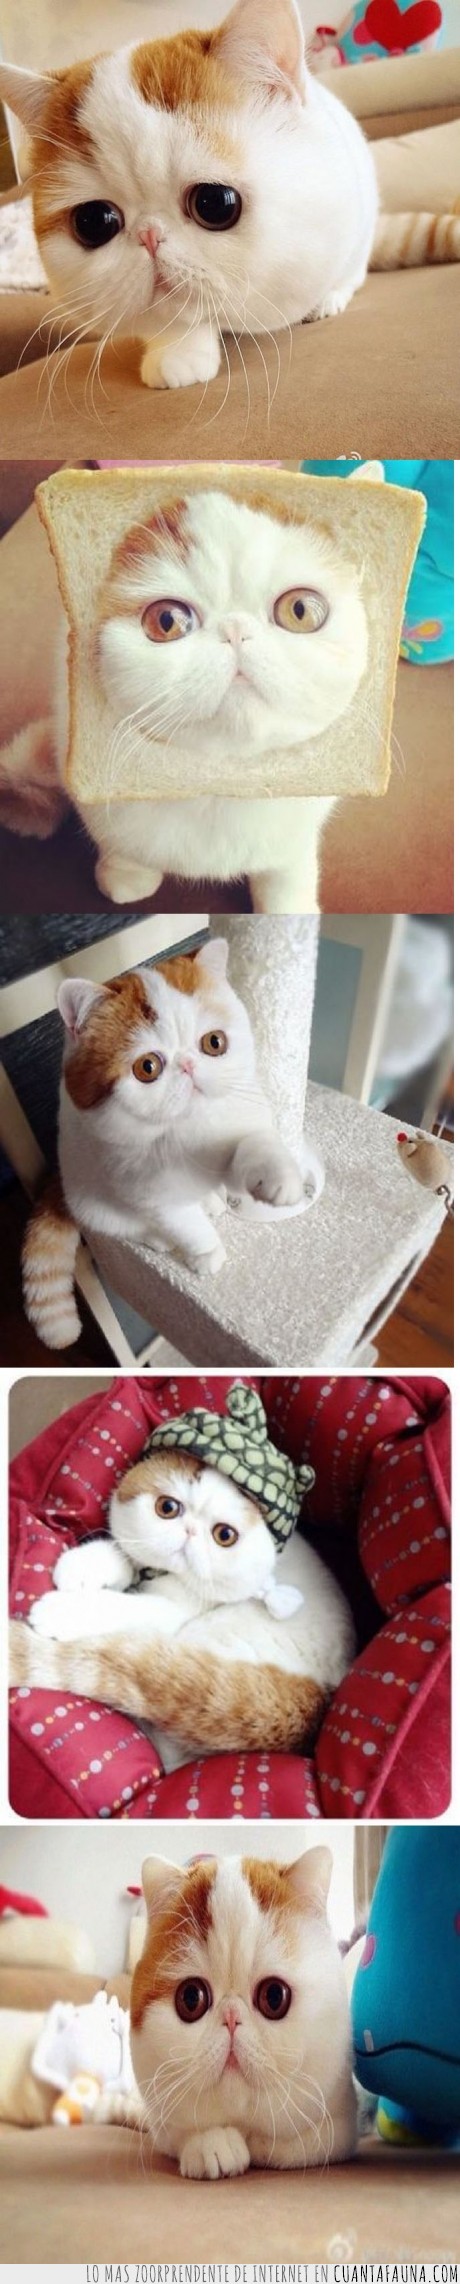 15660 - SNOOPYBABE - Considerado el gato más tierno del mundo